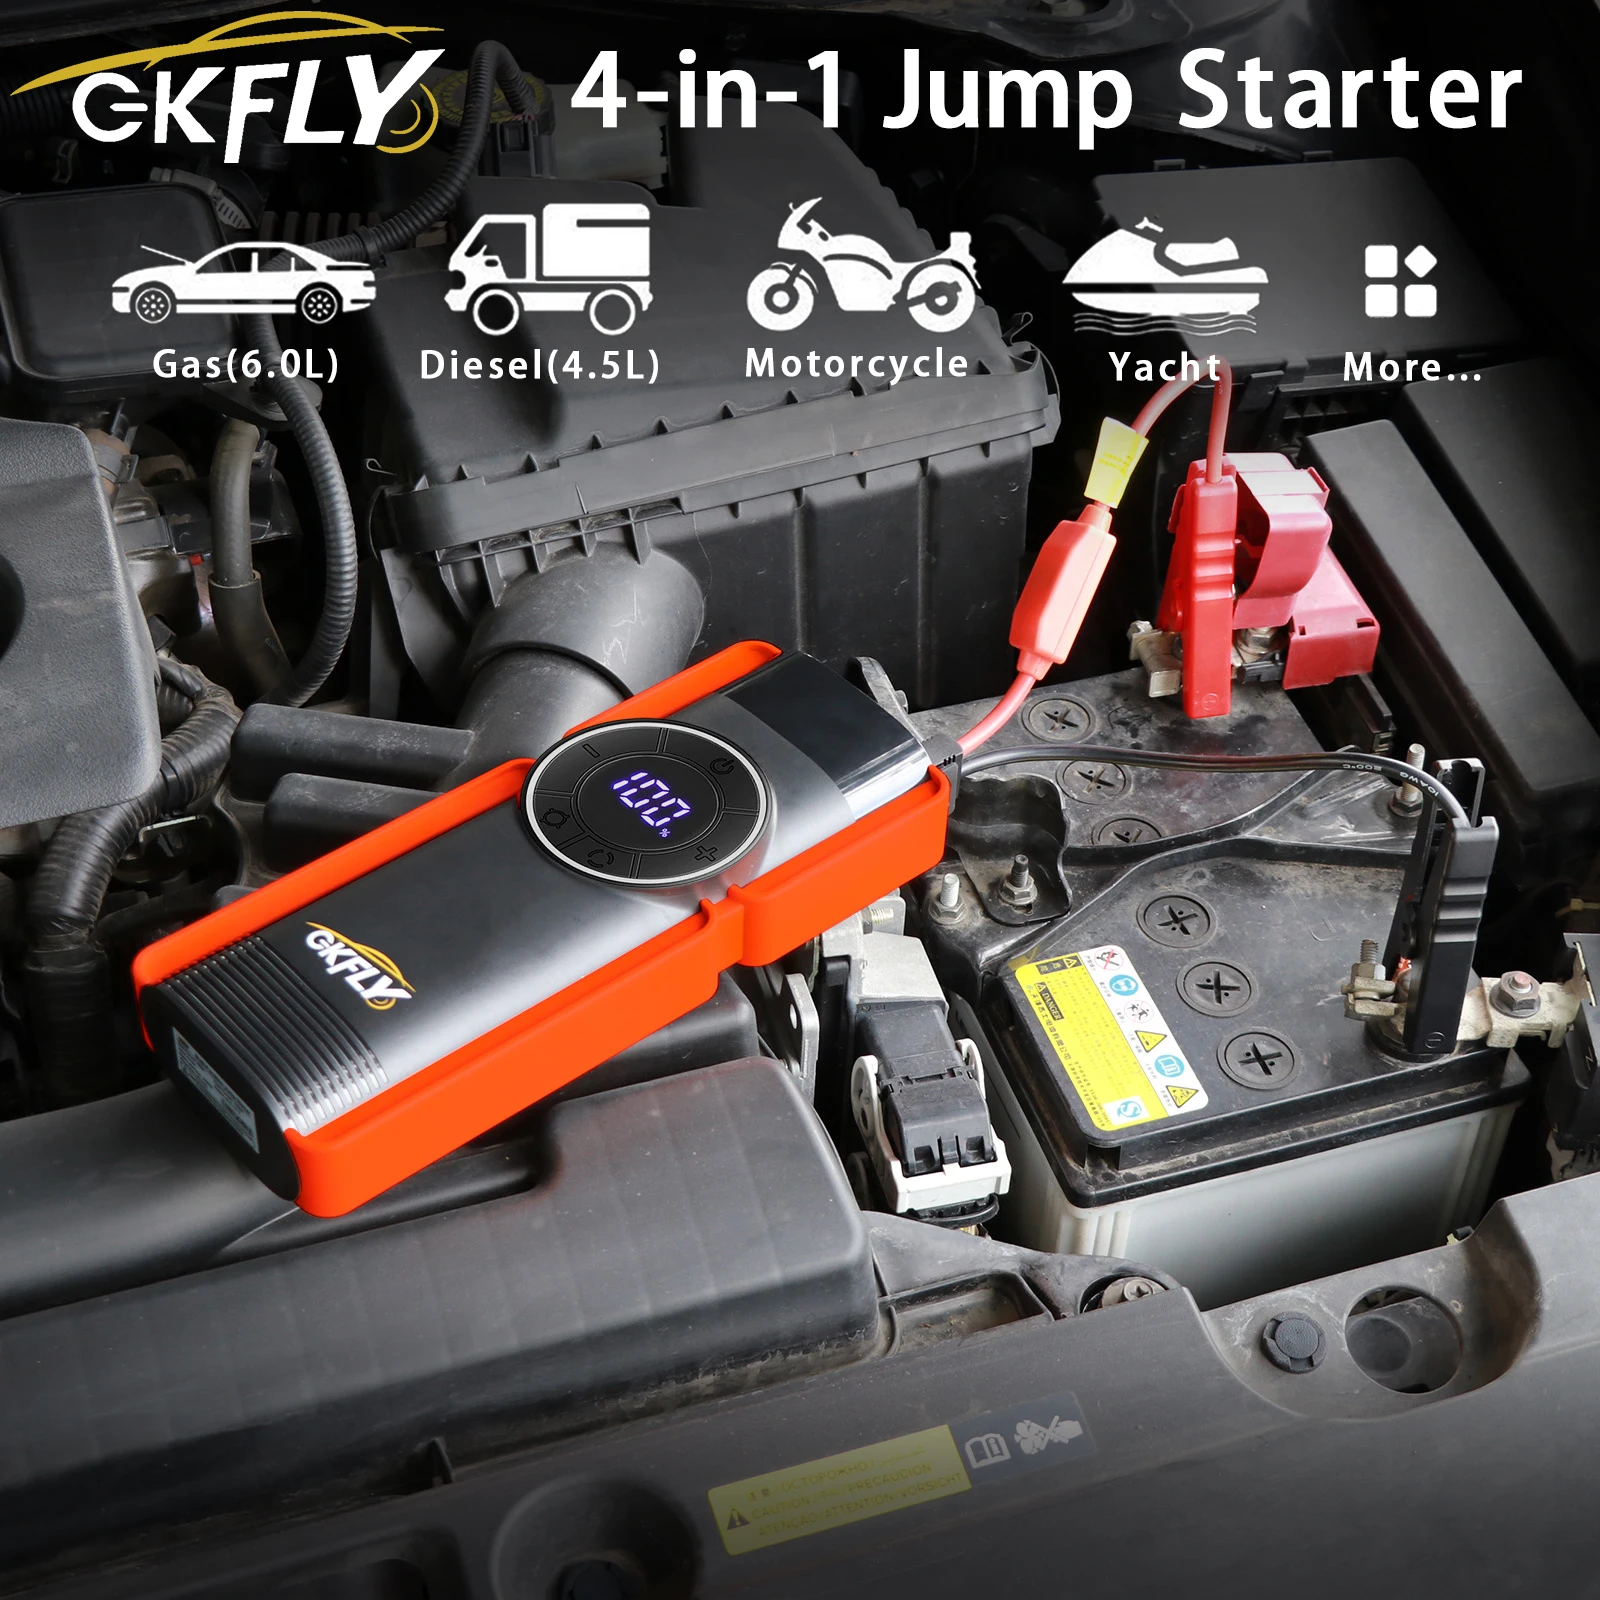 gkfly-jump-starter-bomba-de-compressor-de-ar-4-em-1-jump-starter-1400a-power-bank-inflator-digital-de-pneus-12v-150psi-bateria-de-emergencia